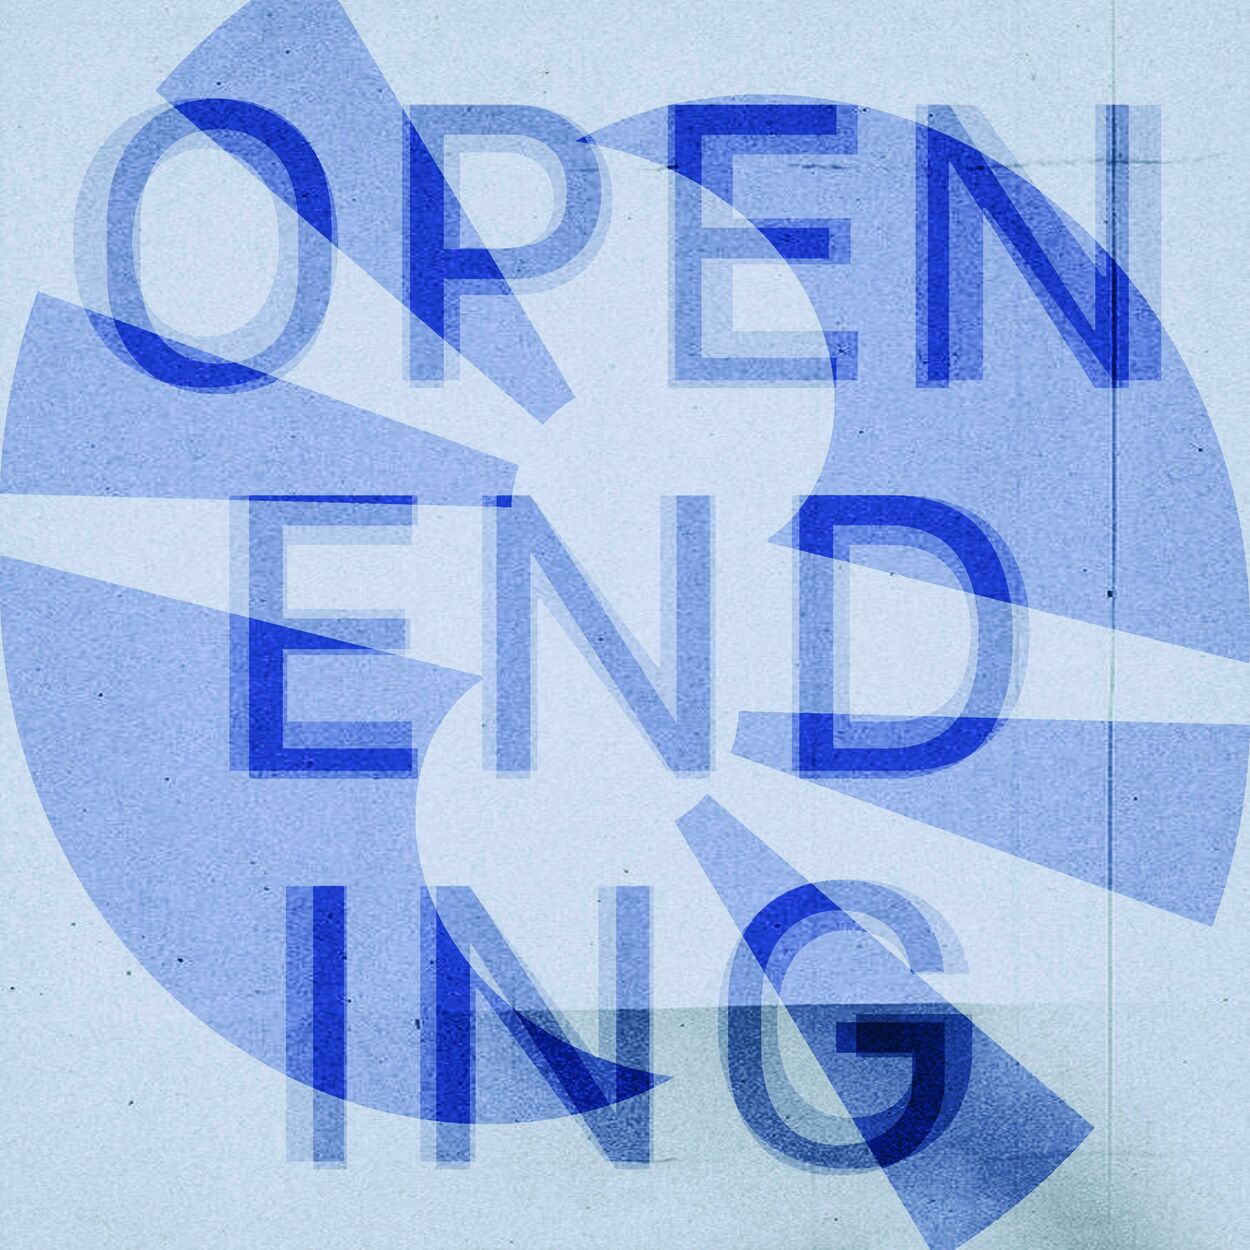 Clefleen – Open Ending (Feat. Joh!) – Single